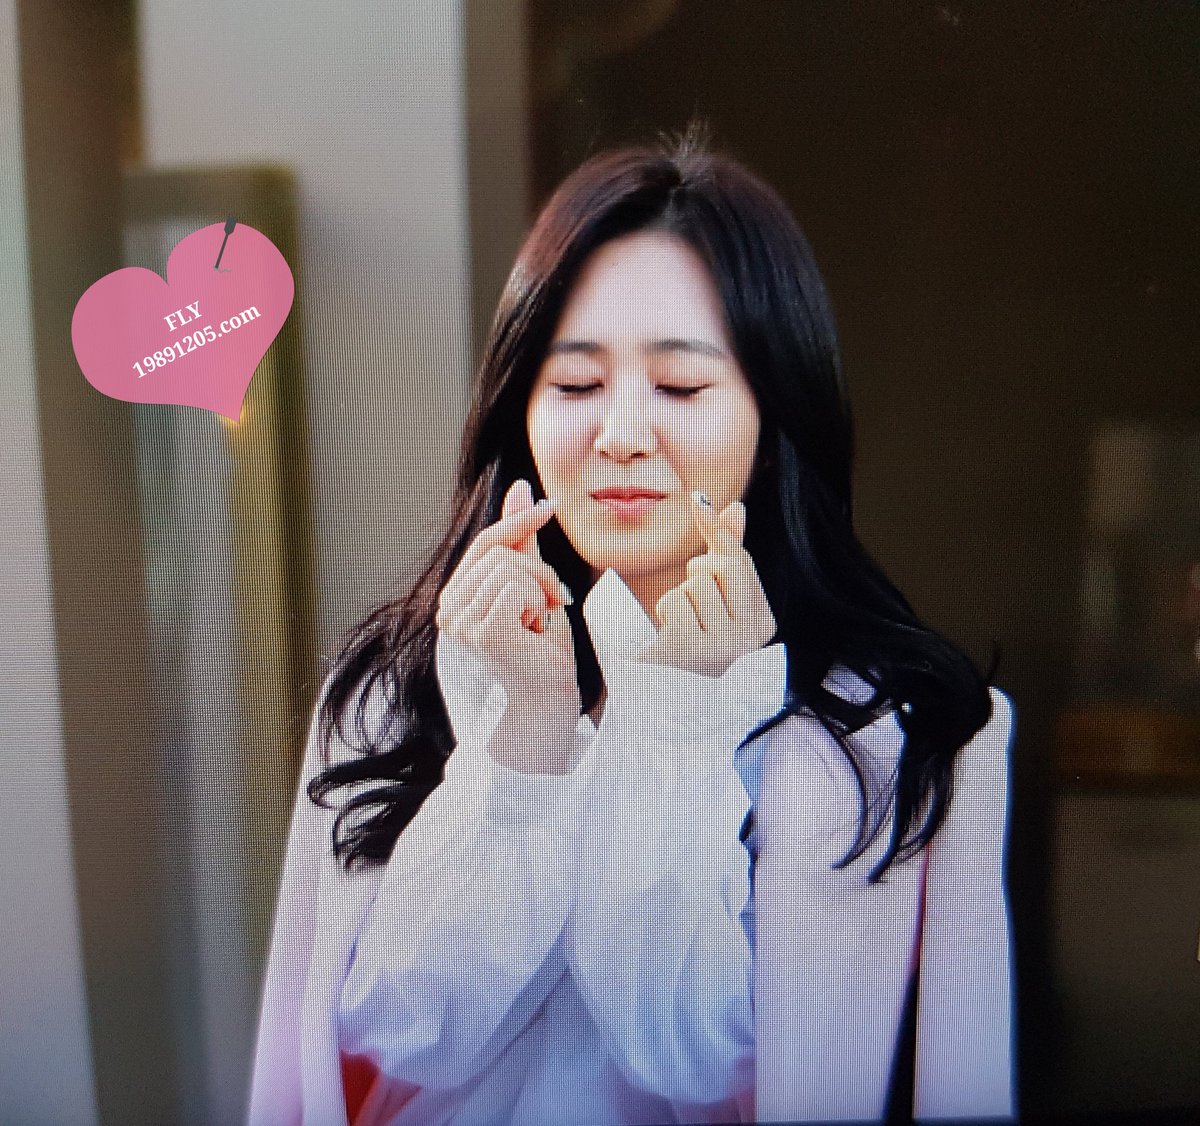 [PIC][09-10-2016]Yuri tham dự buổi Fansign thứ 2 cho thương hiệu nước hoa "BVLGARI Rose Goldea" tại Myeongdong Lotte Duty Free vào chiều nay CuT36eIUMAAzqOi